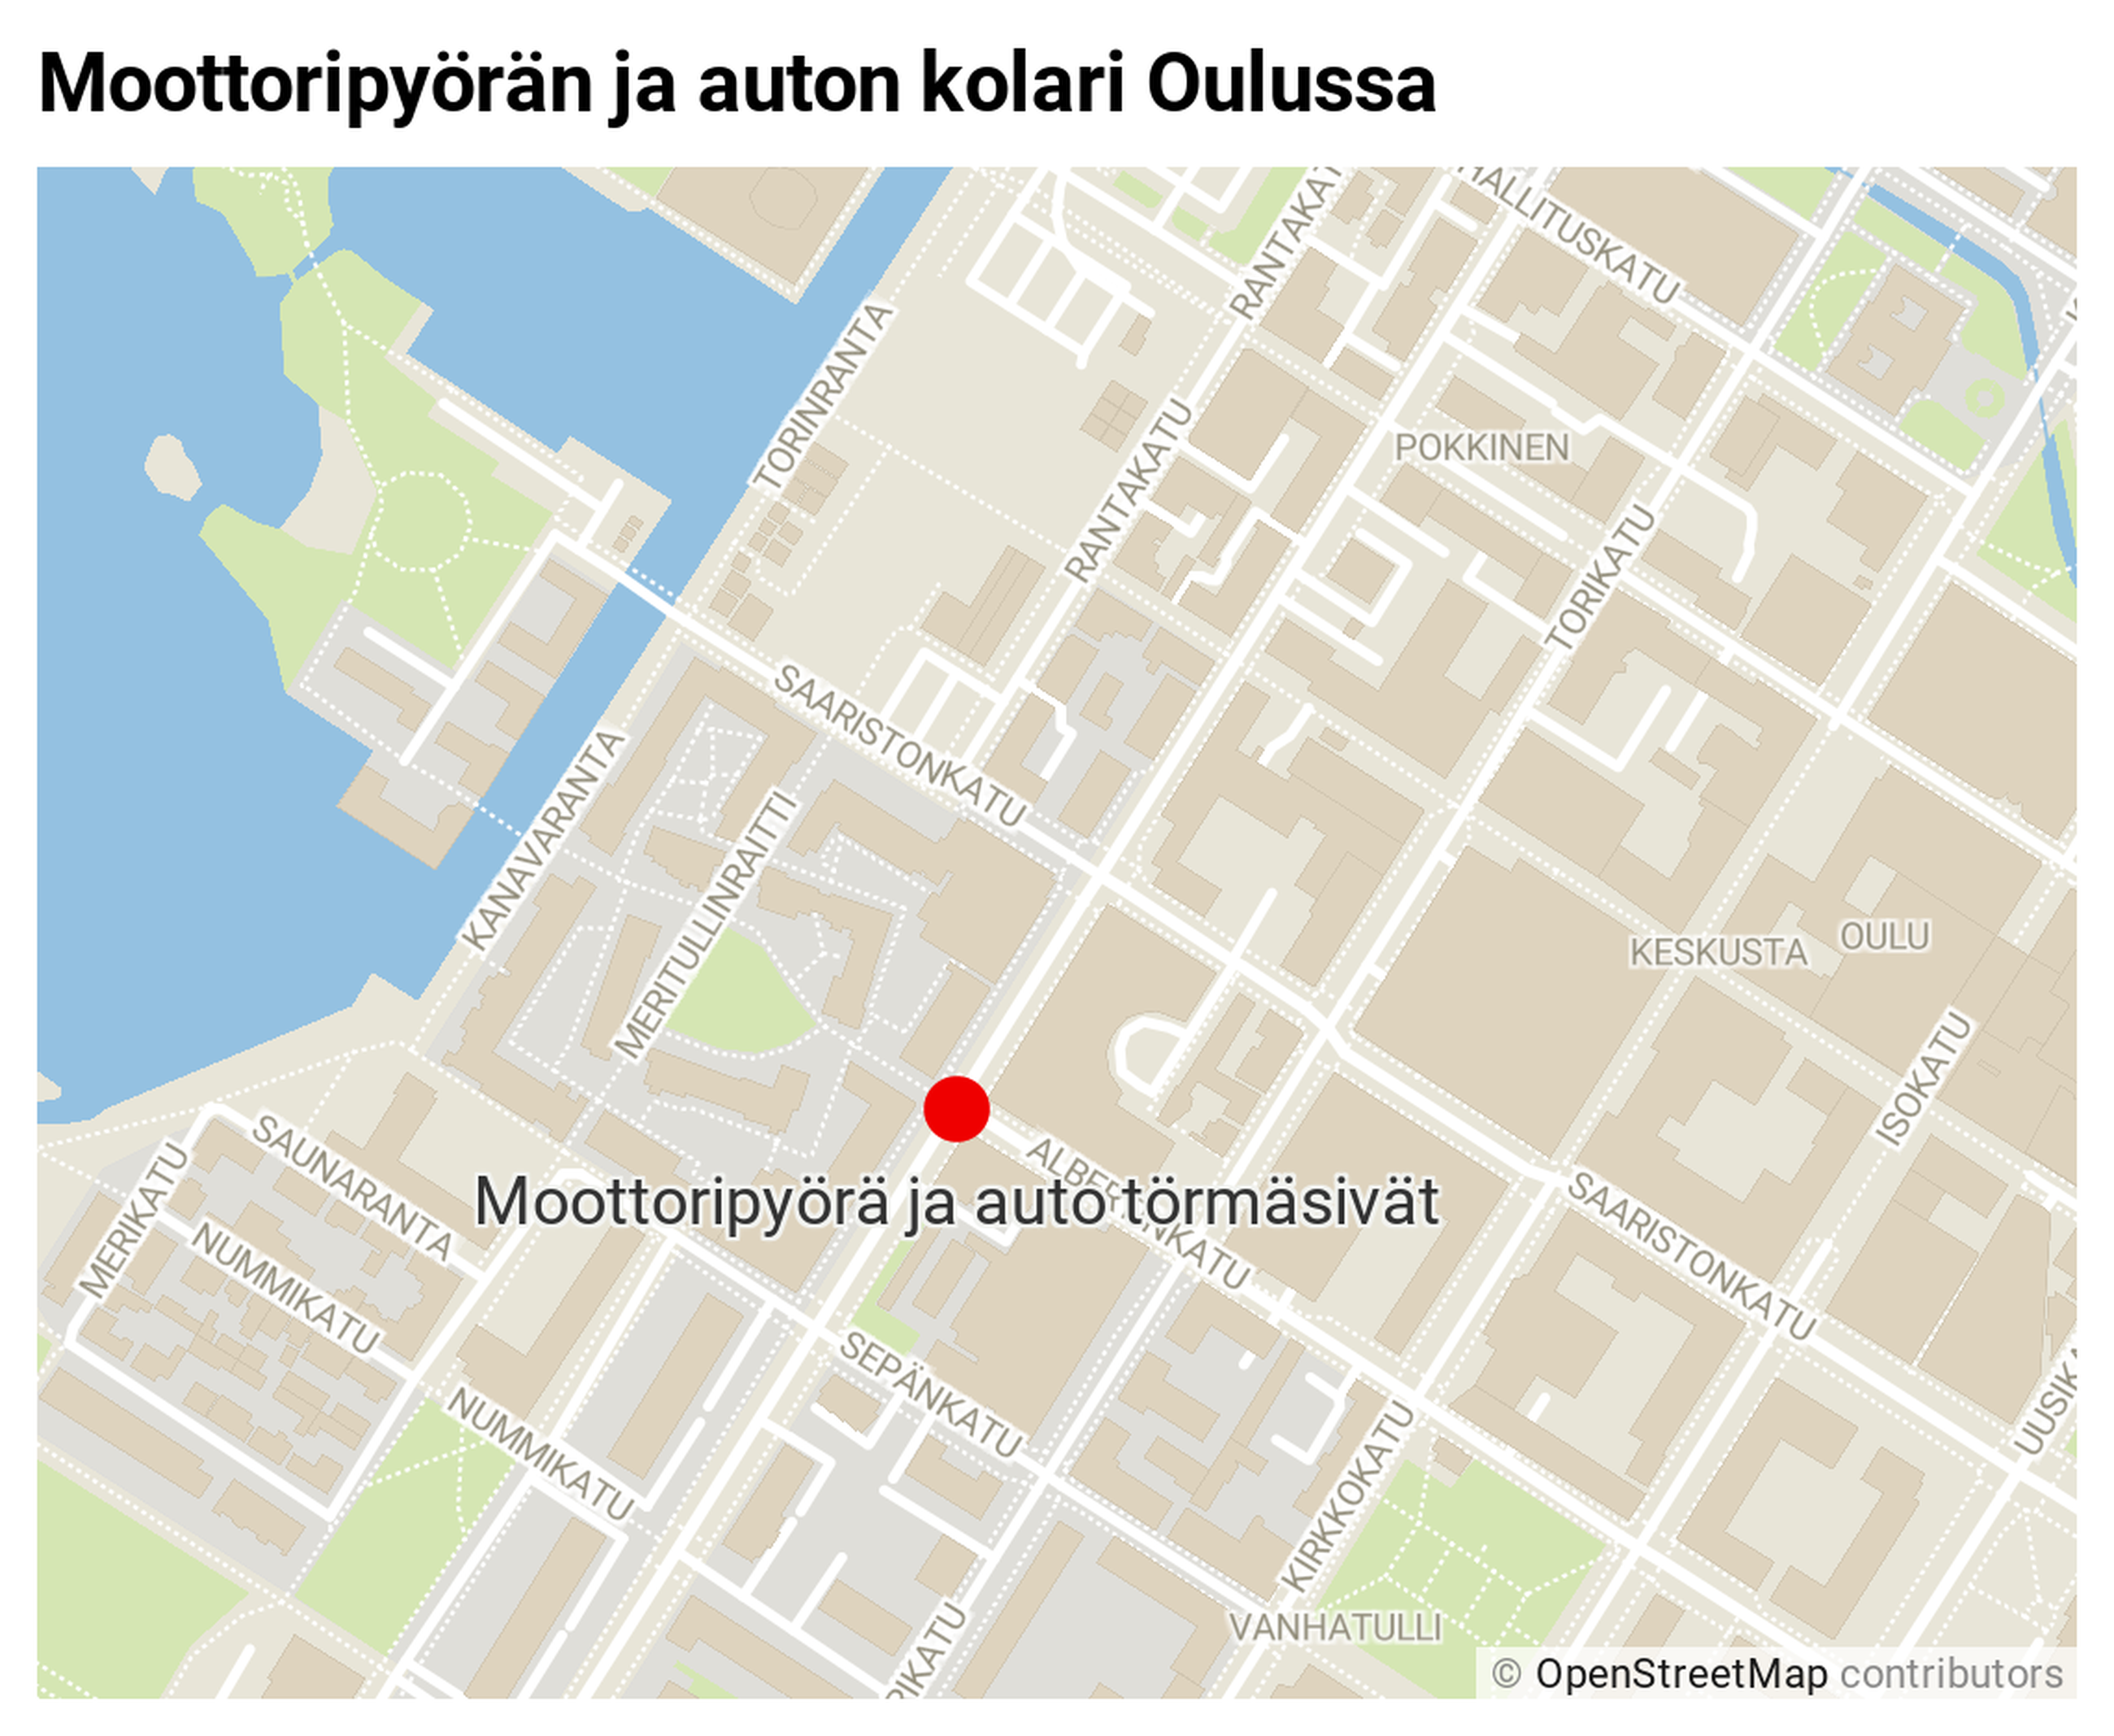 Moottoripyöräilijä loukkaantui kolarissa Oulun keskustassa | Kaleva